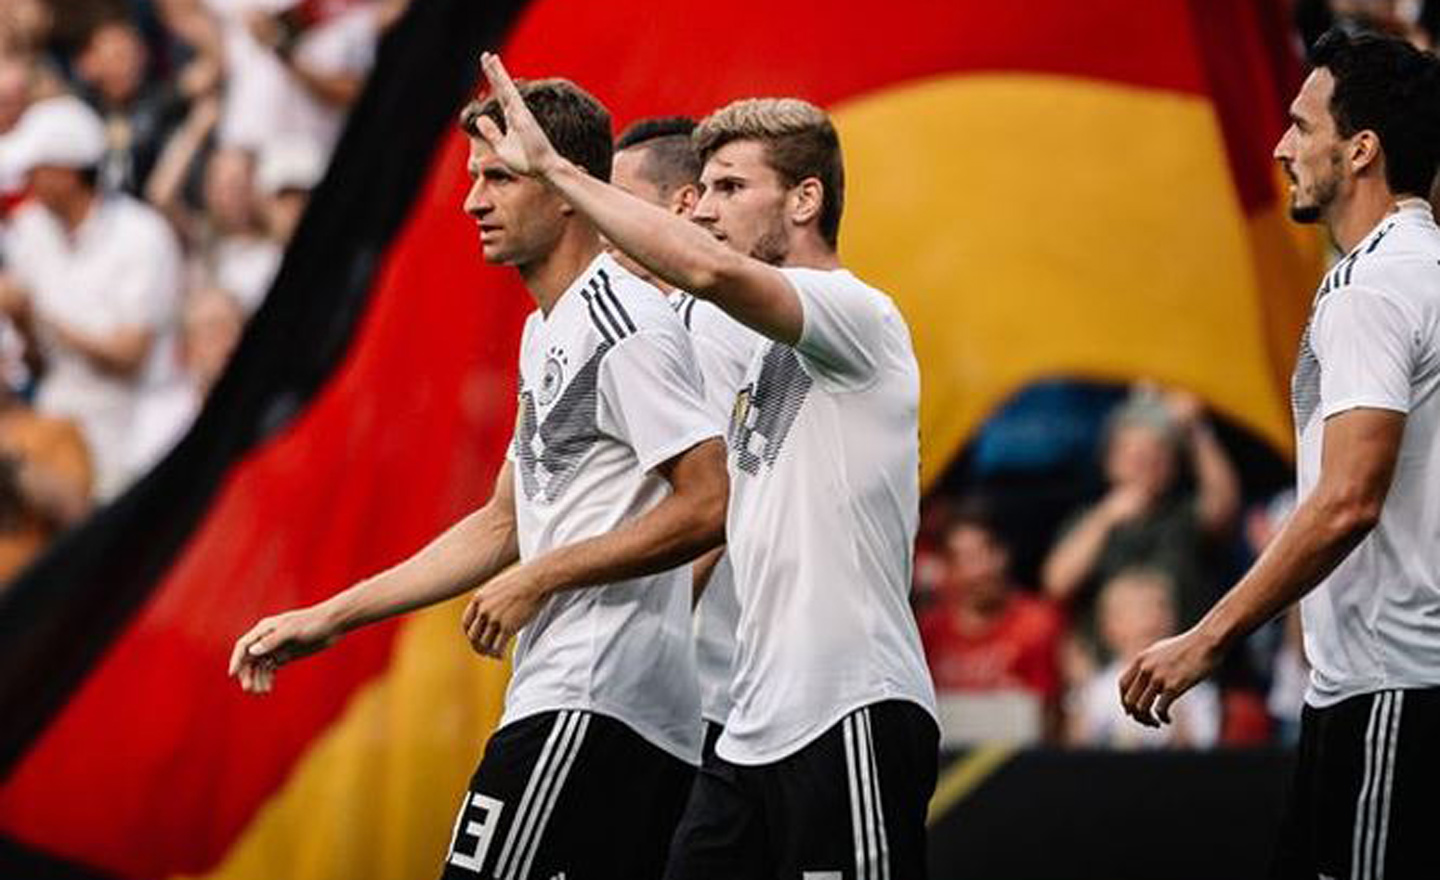 Đức giành quyền đăng cai EURO 2024.